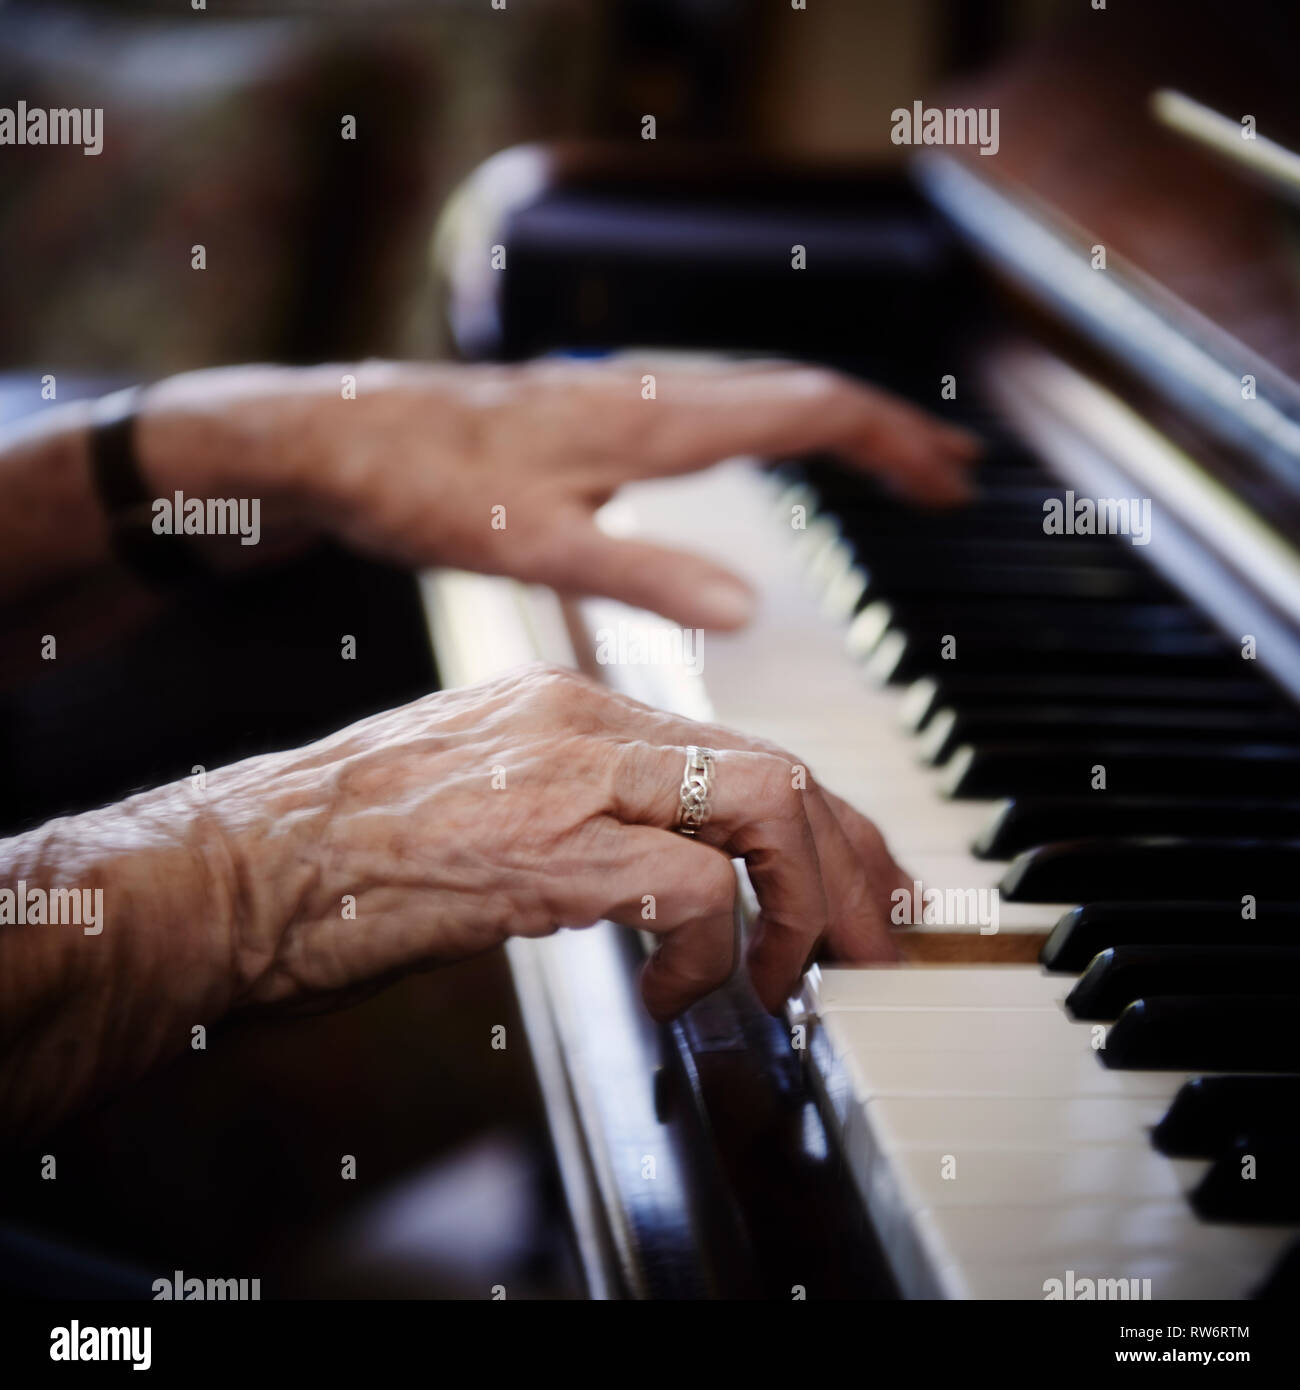 Die 96-jährige Jean McDougall Klavier spielt in ihrem Haus. Ihre schönen texturierte Hände fliegen über die Tasten des Klaviers. Stockfoto